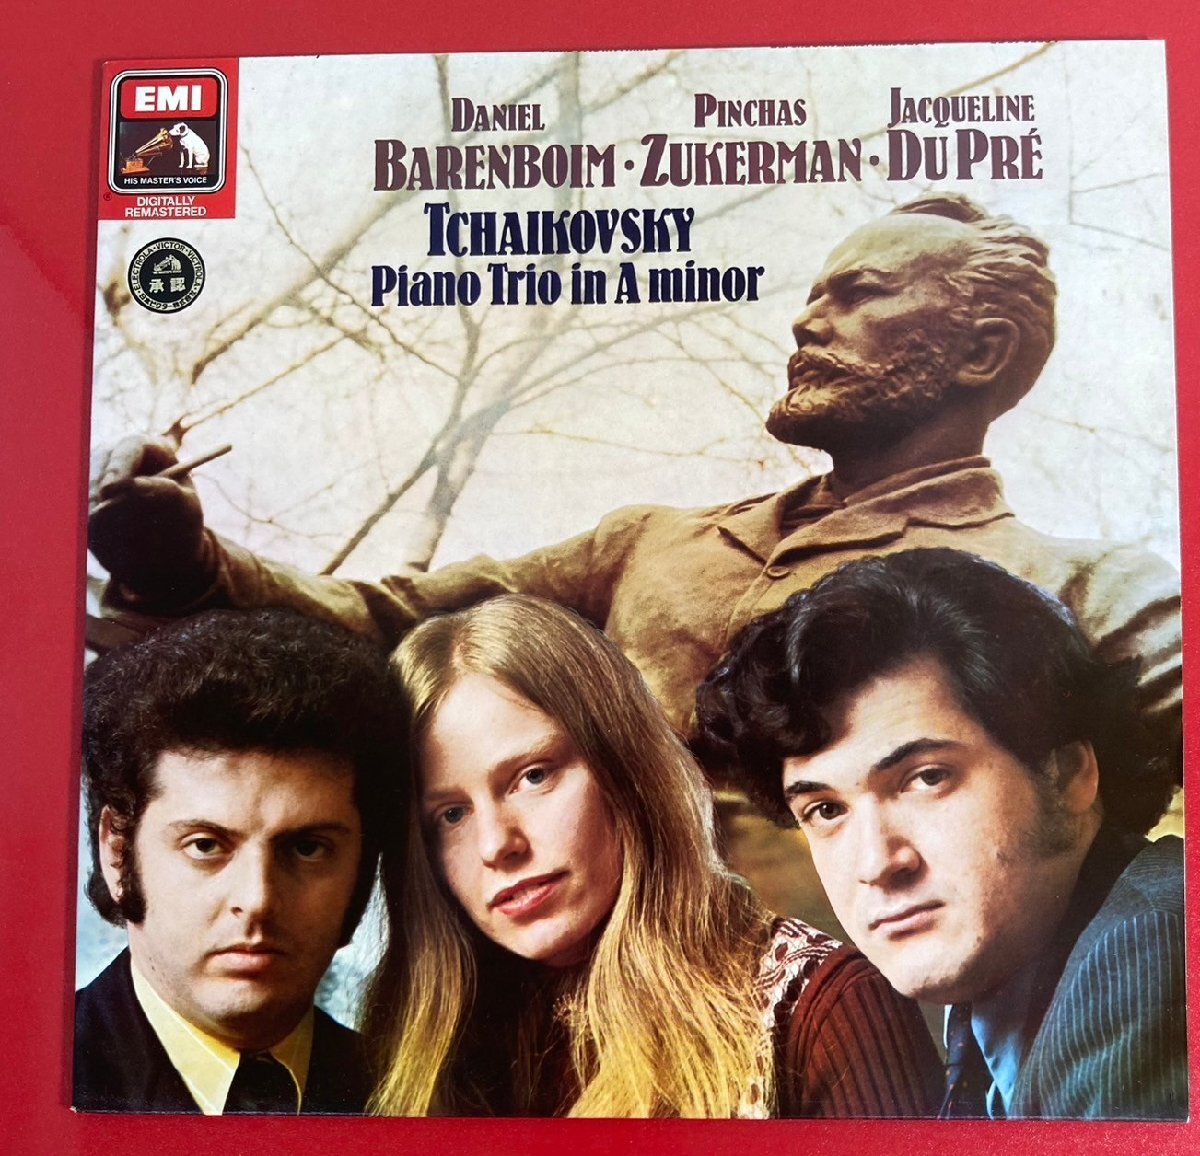 【レコードコレクター放出品】 LP バレンボイム ズーカーマン デュ・プレ チャイコフスキー ピアノ三重奏曲の画像1